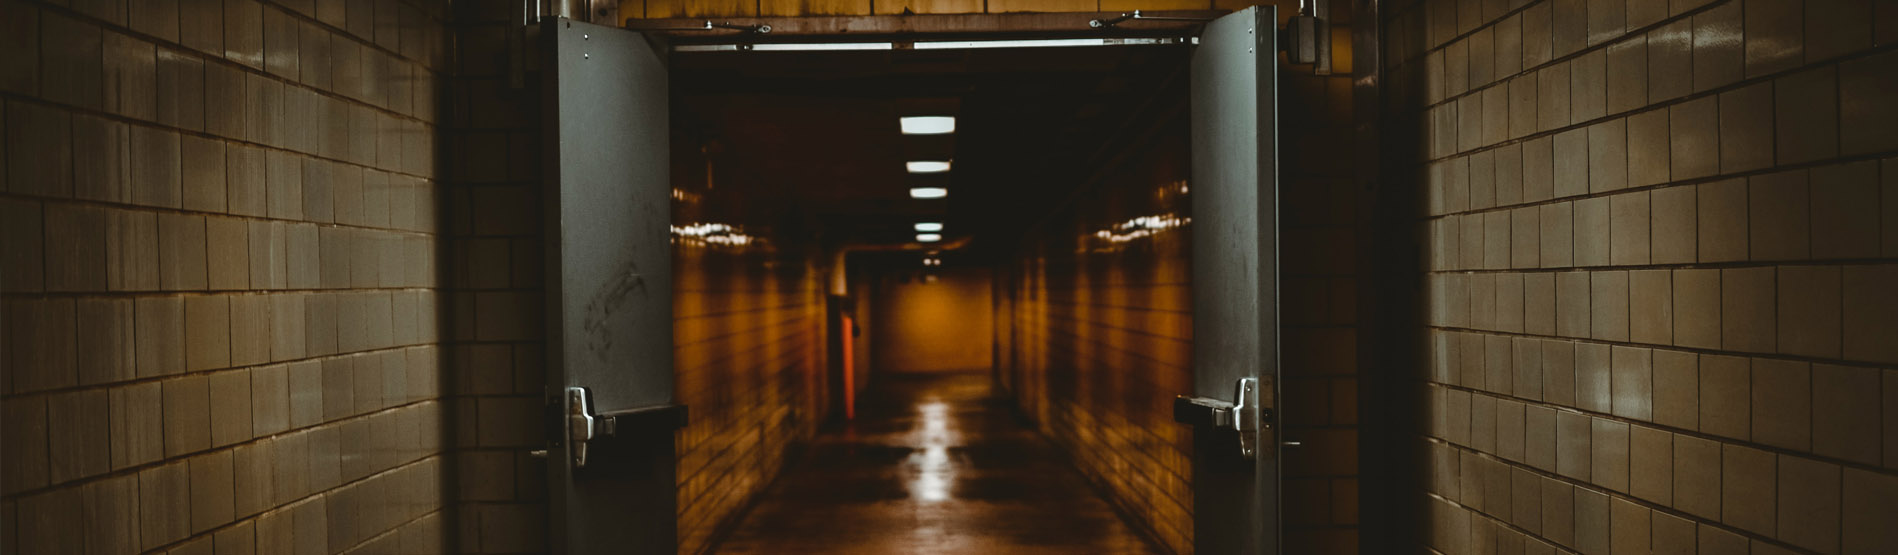 An image of a dark corridor